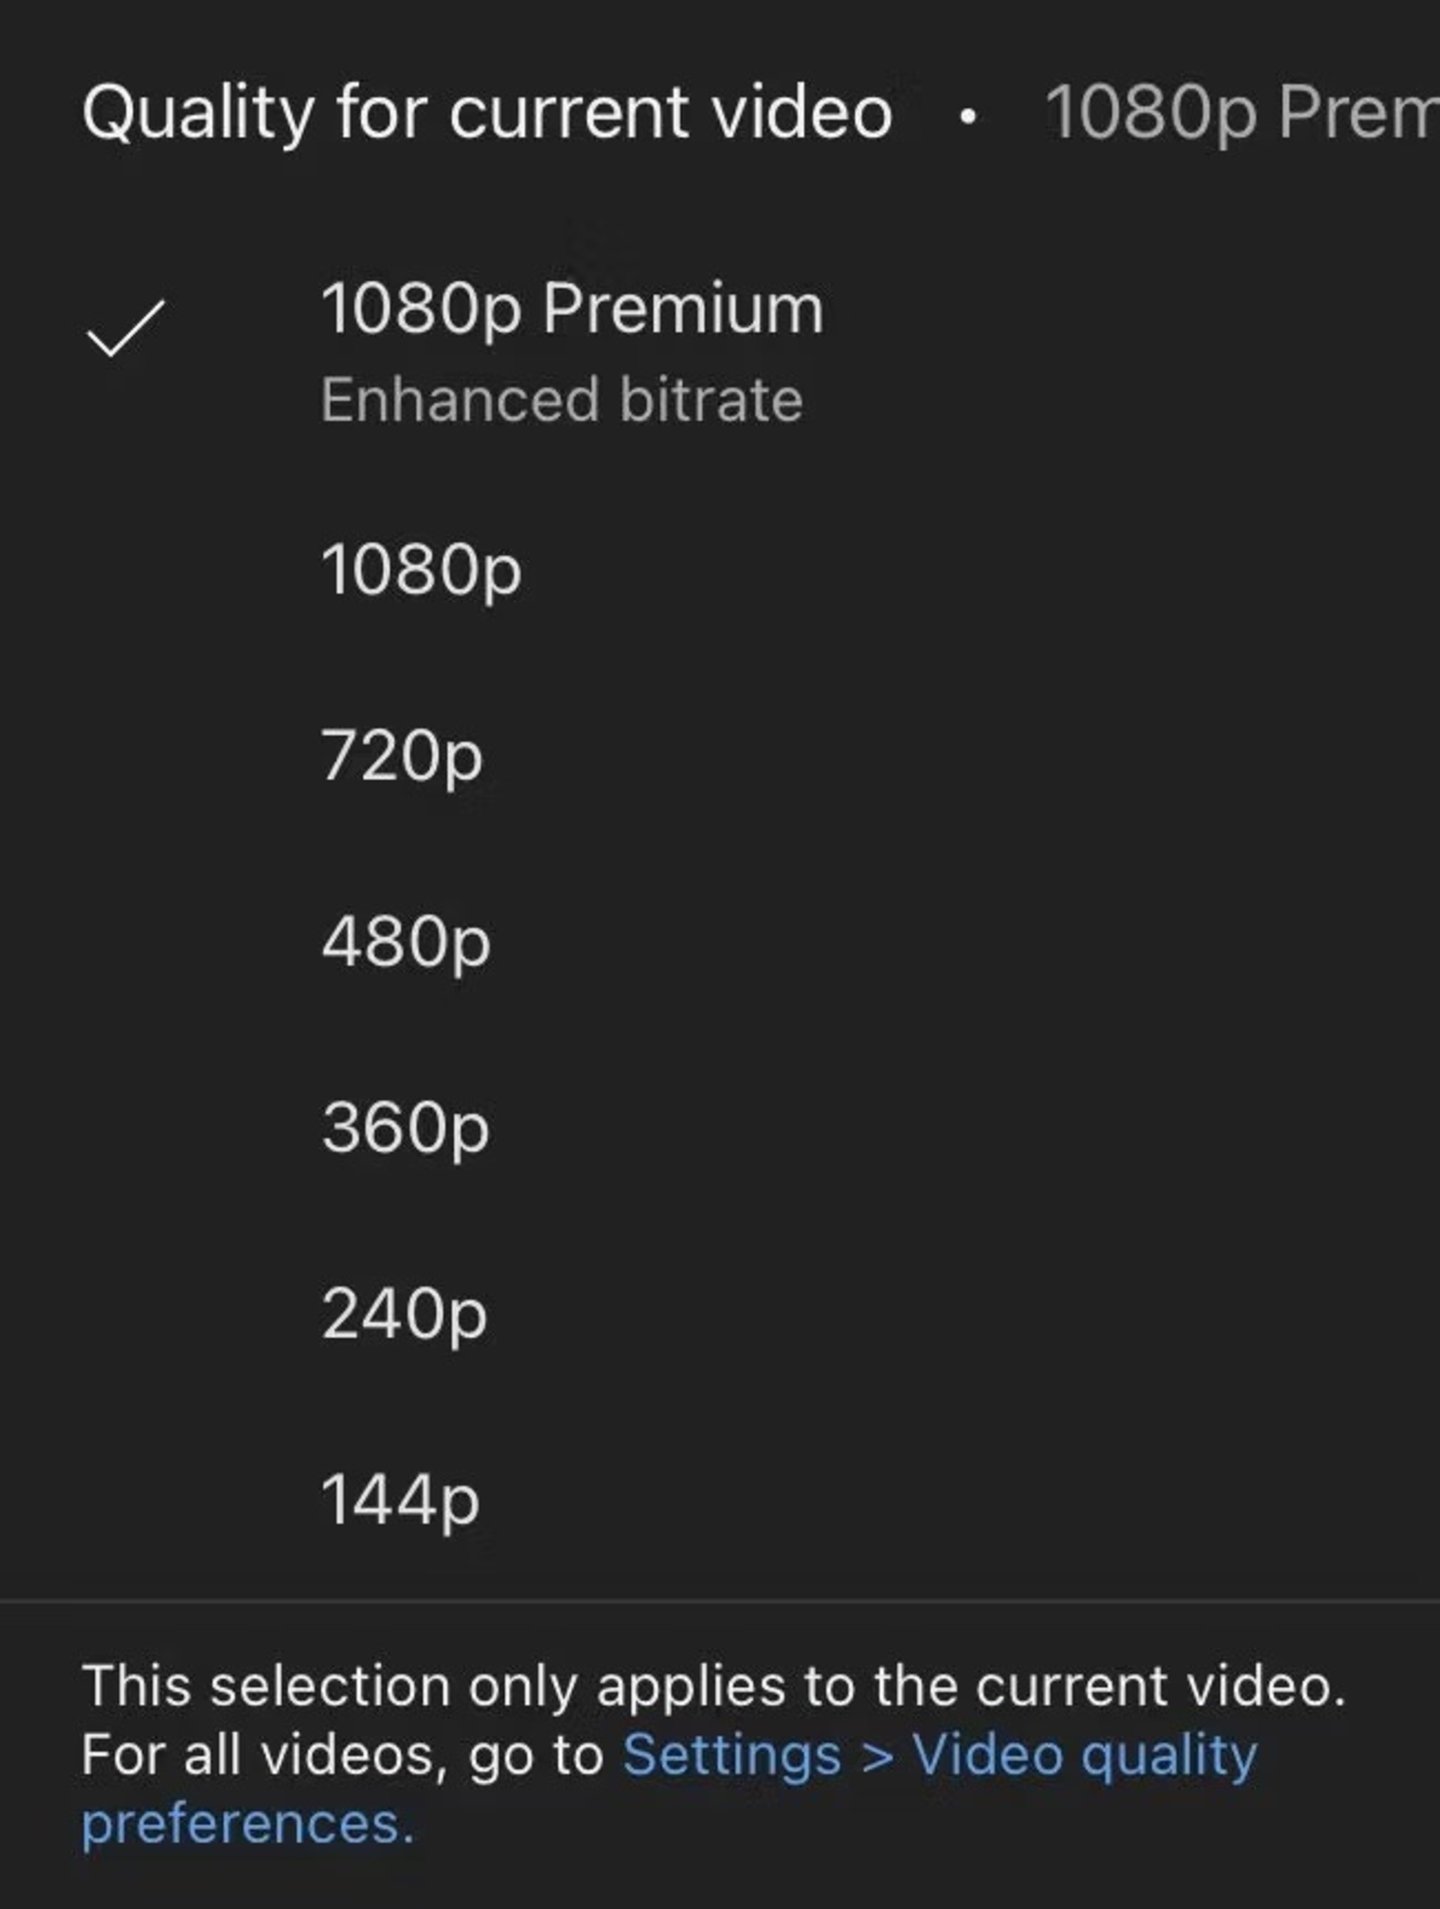 Calidad 1080p Premium